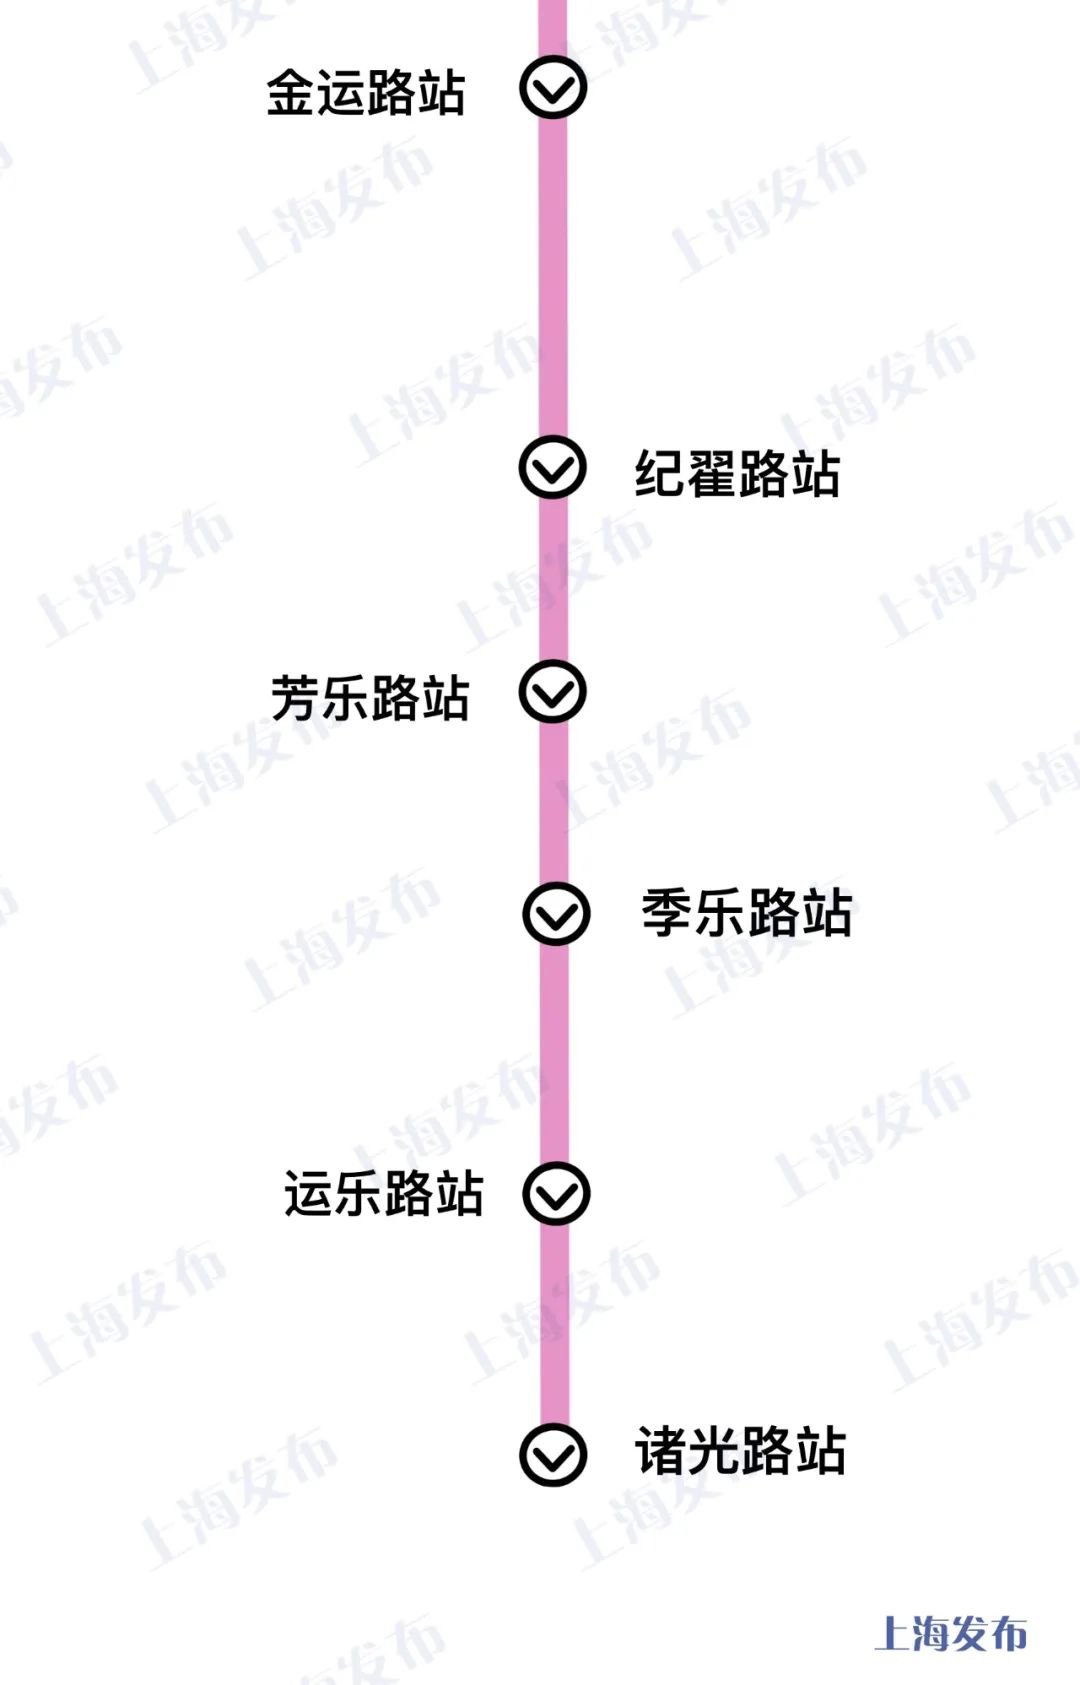 交通出行 地铁指南 上海地铁13号线 上海13号线西延伸线路图 站点